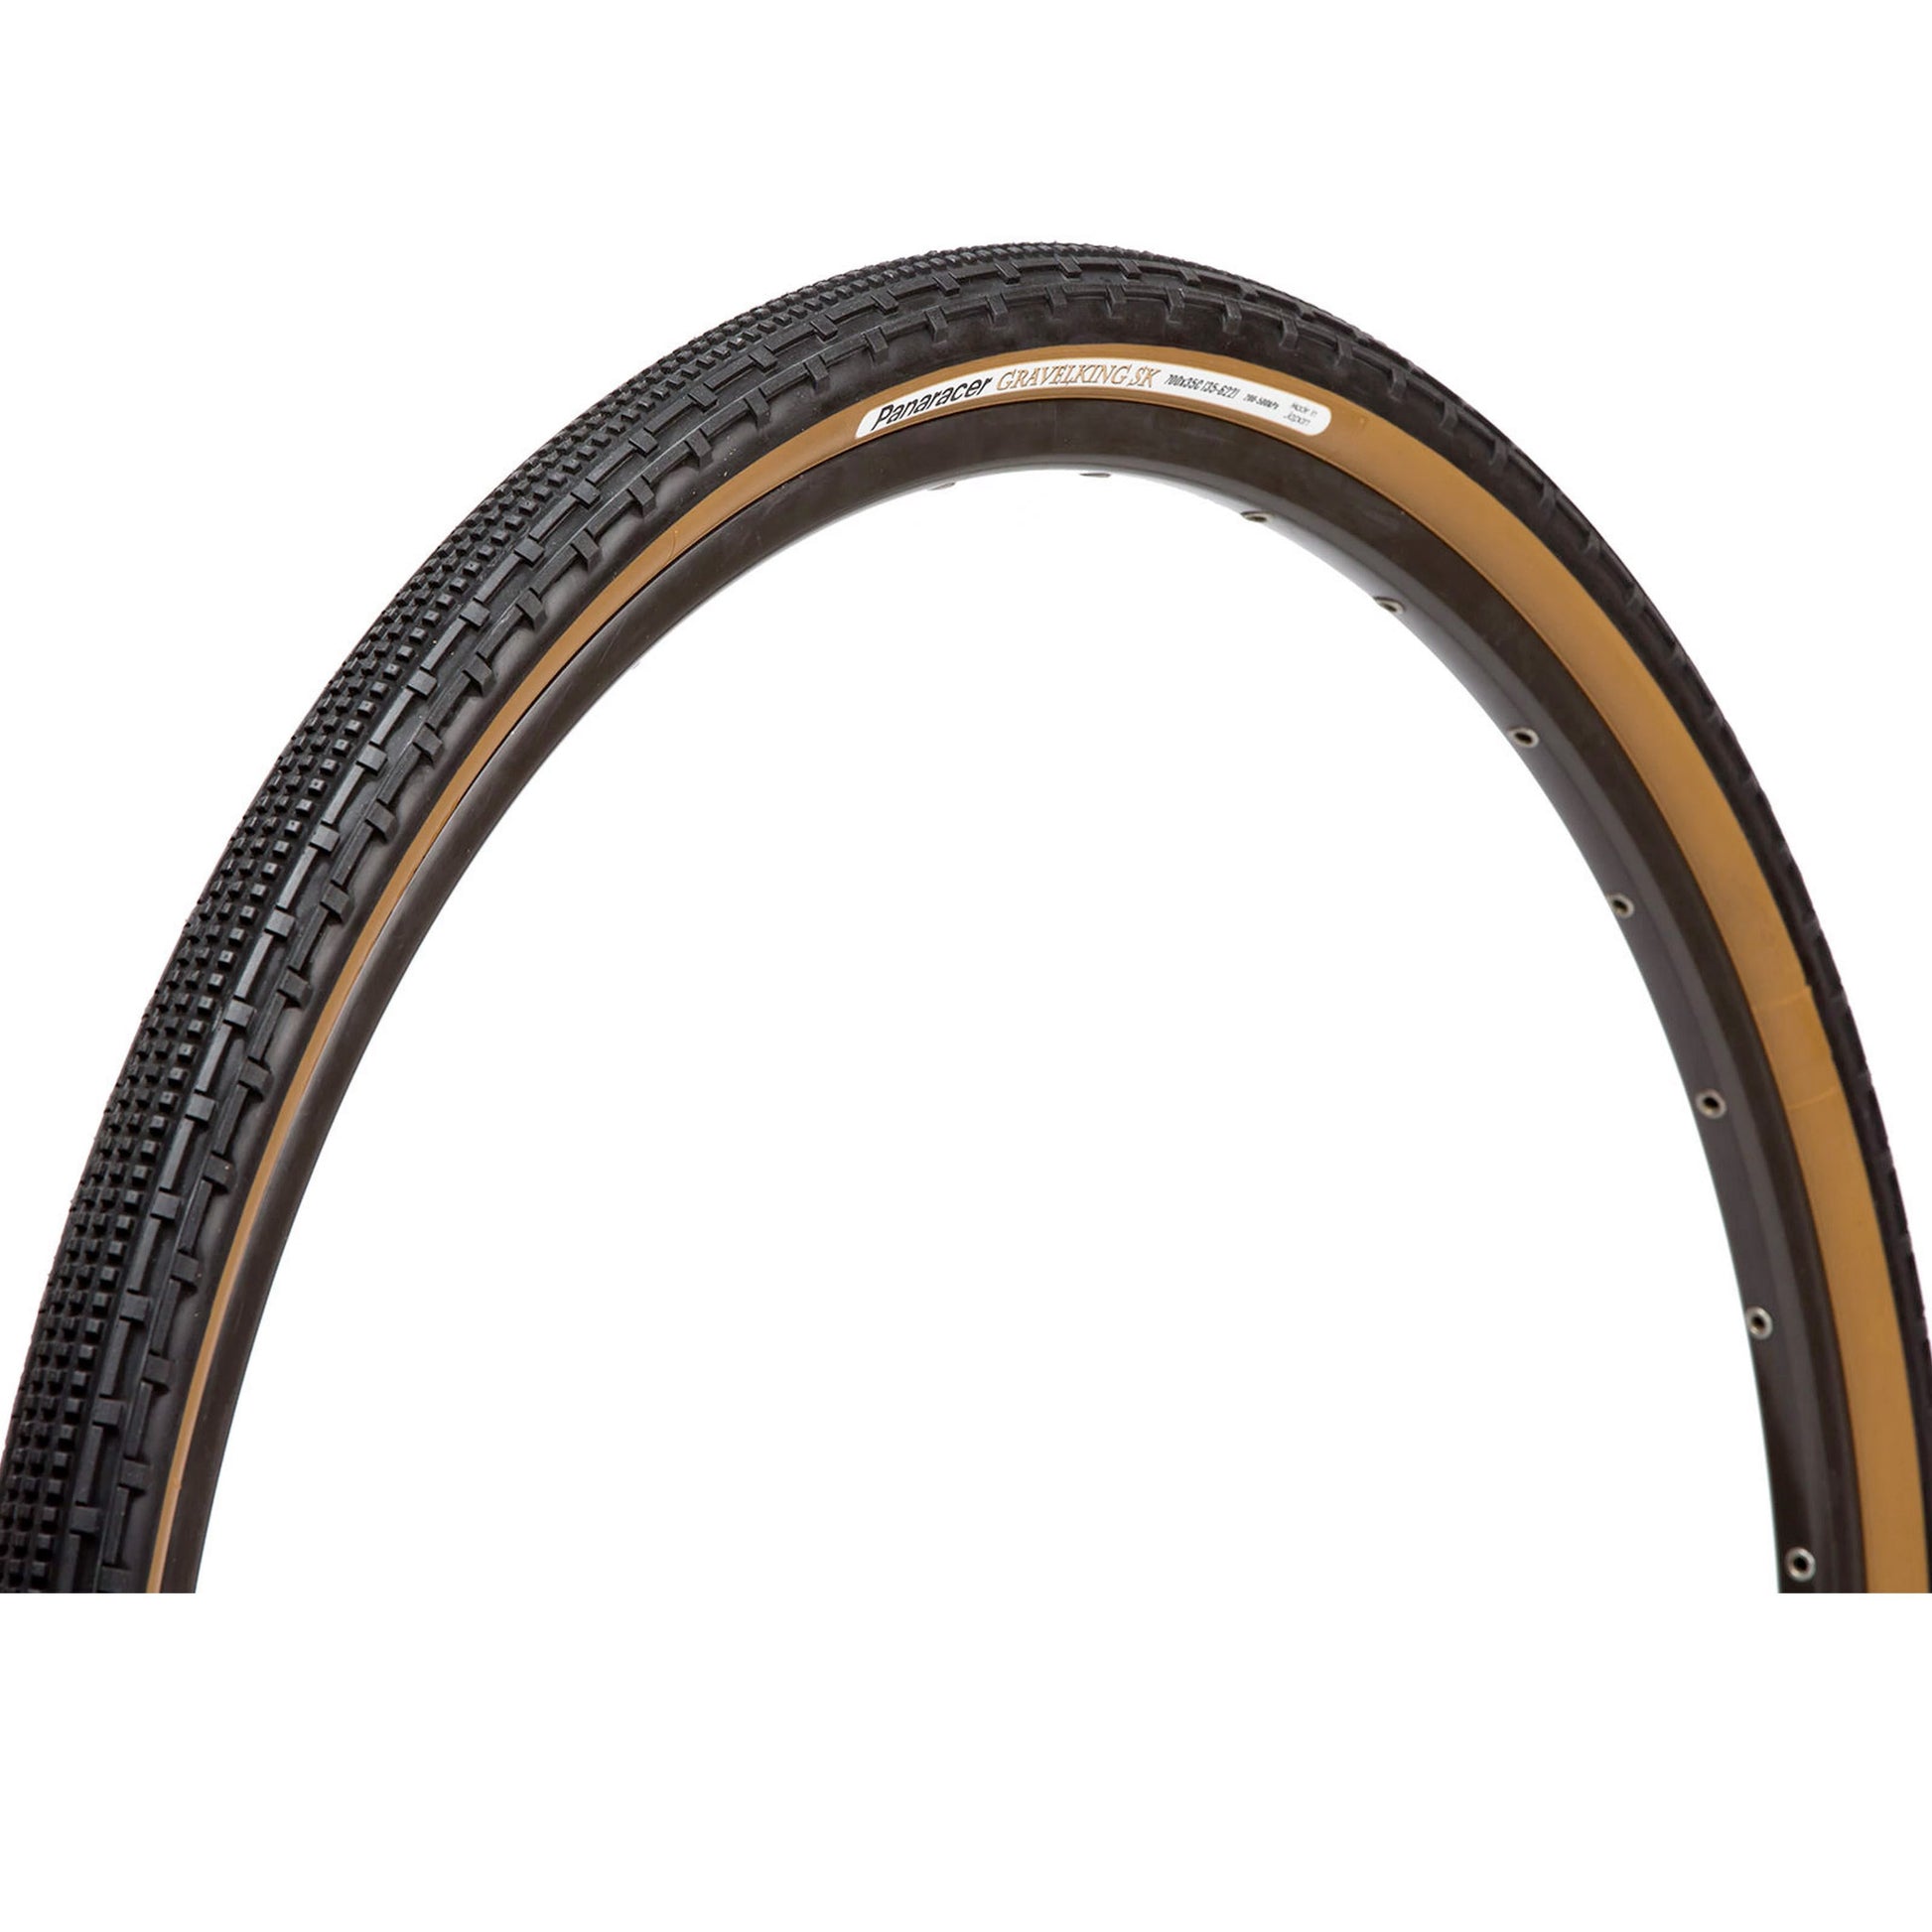 Panaracer Gravelking SK 700x32c Tyre, Black/Tan